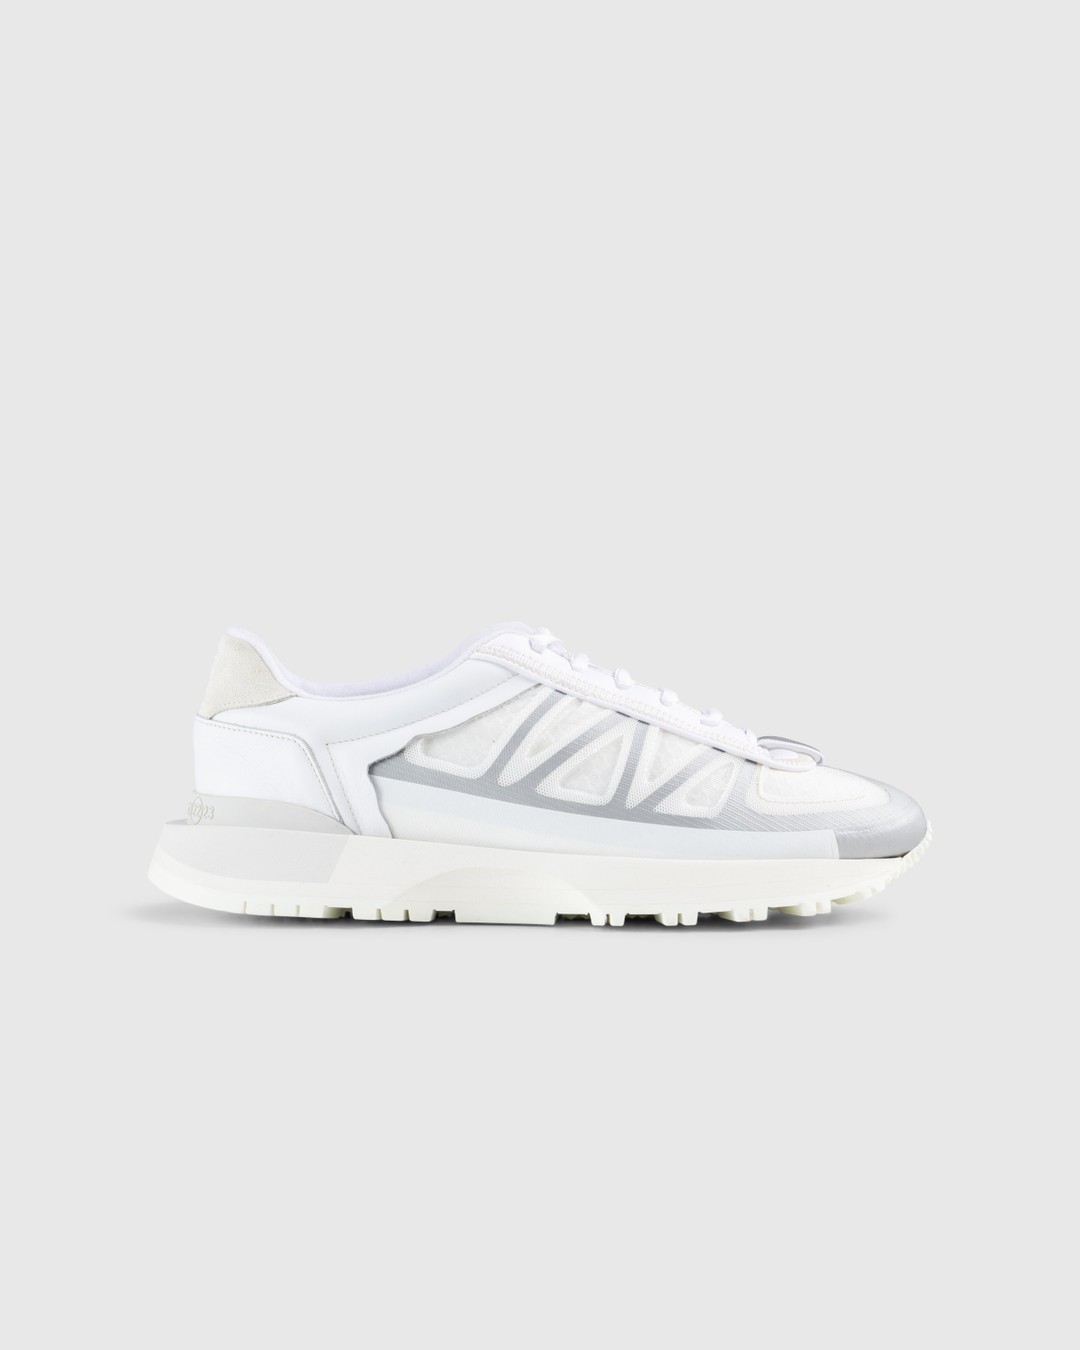 Maison Margiela – 50/50 Sneakers White - Sneakers - White - Image 1